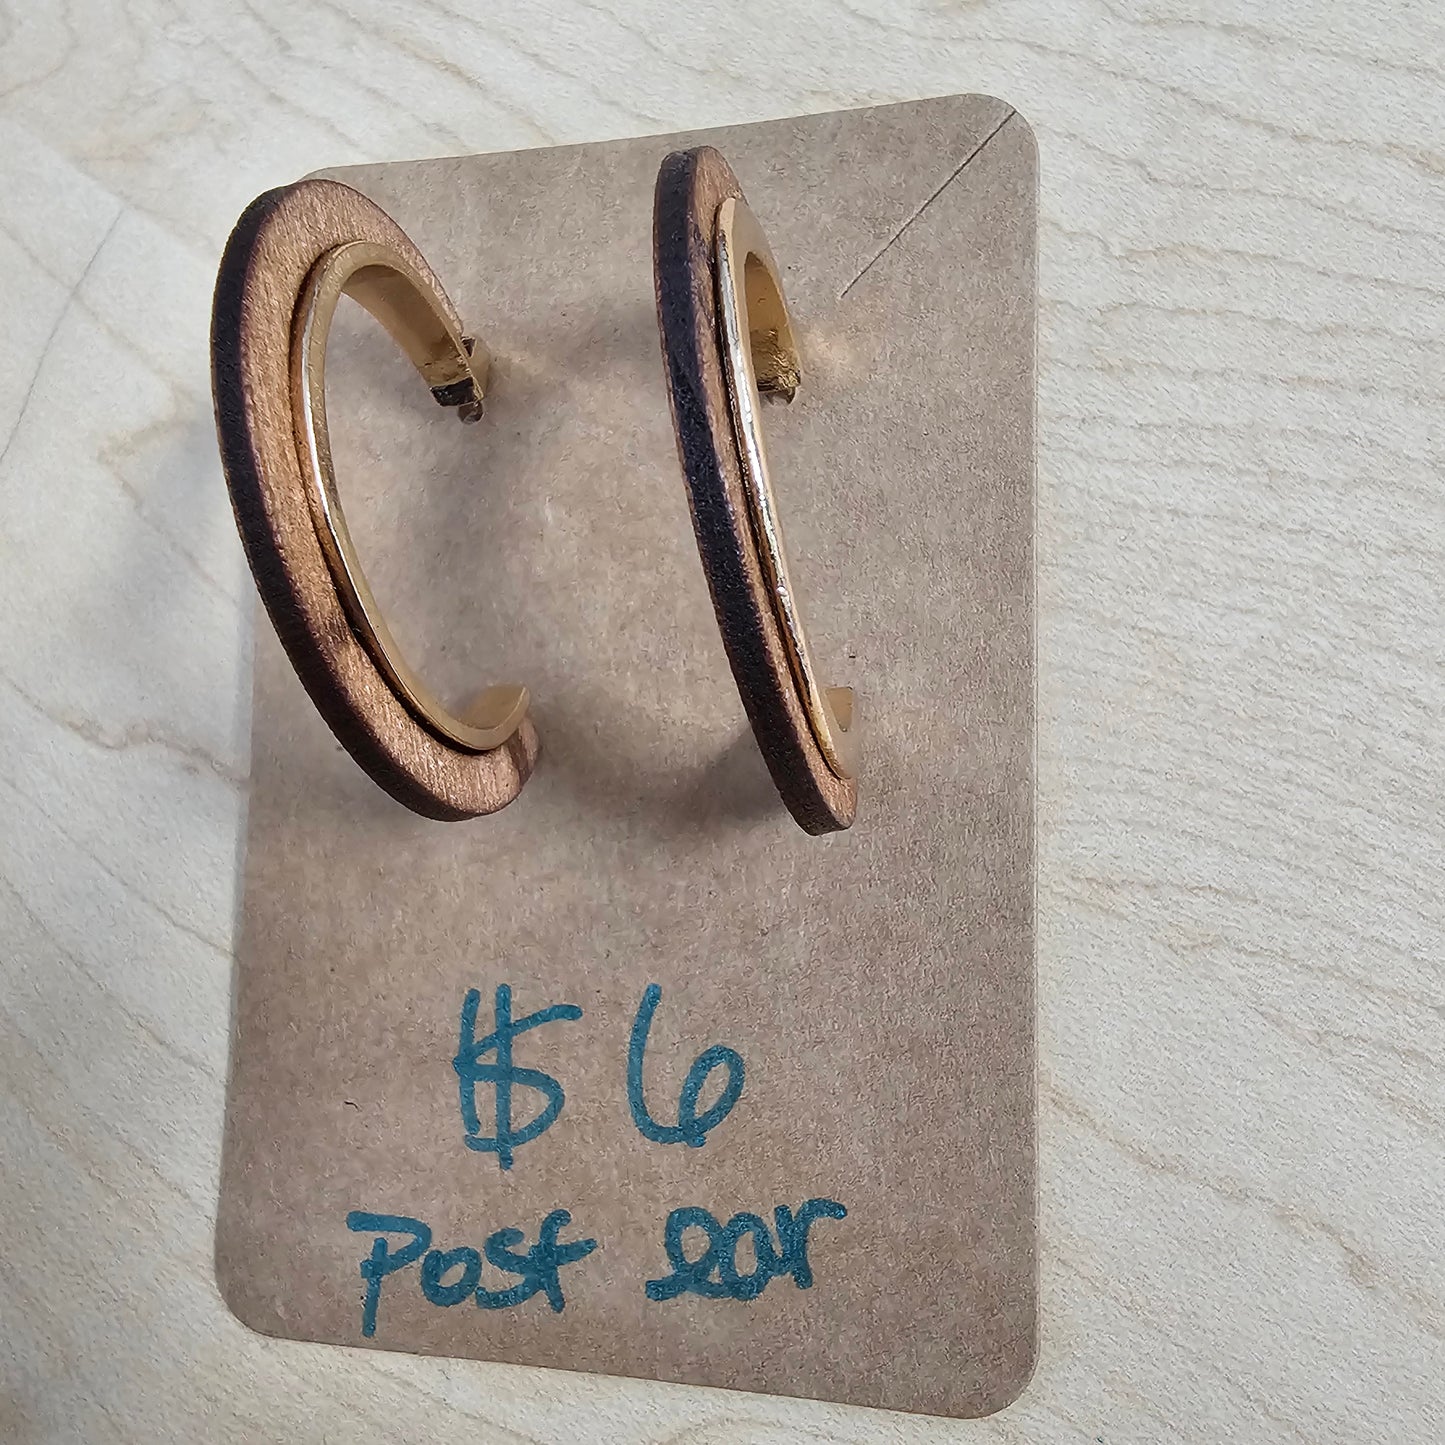 Post hoop earrings